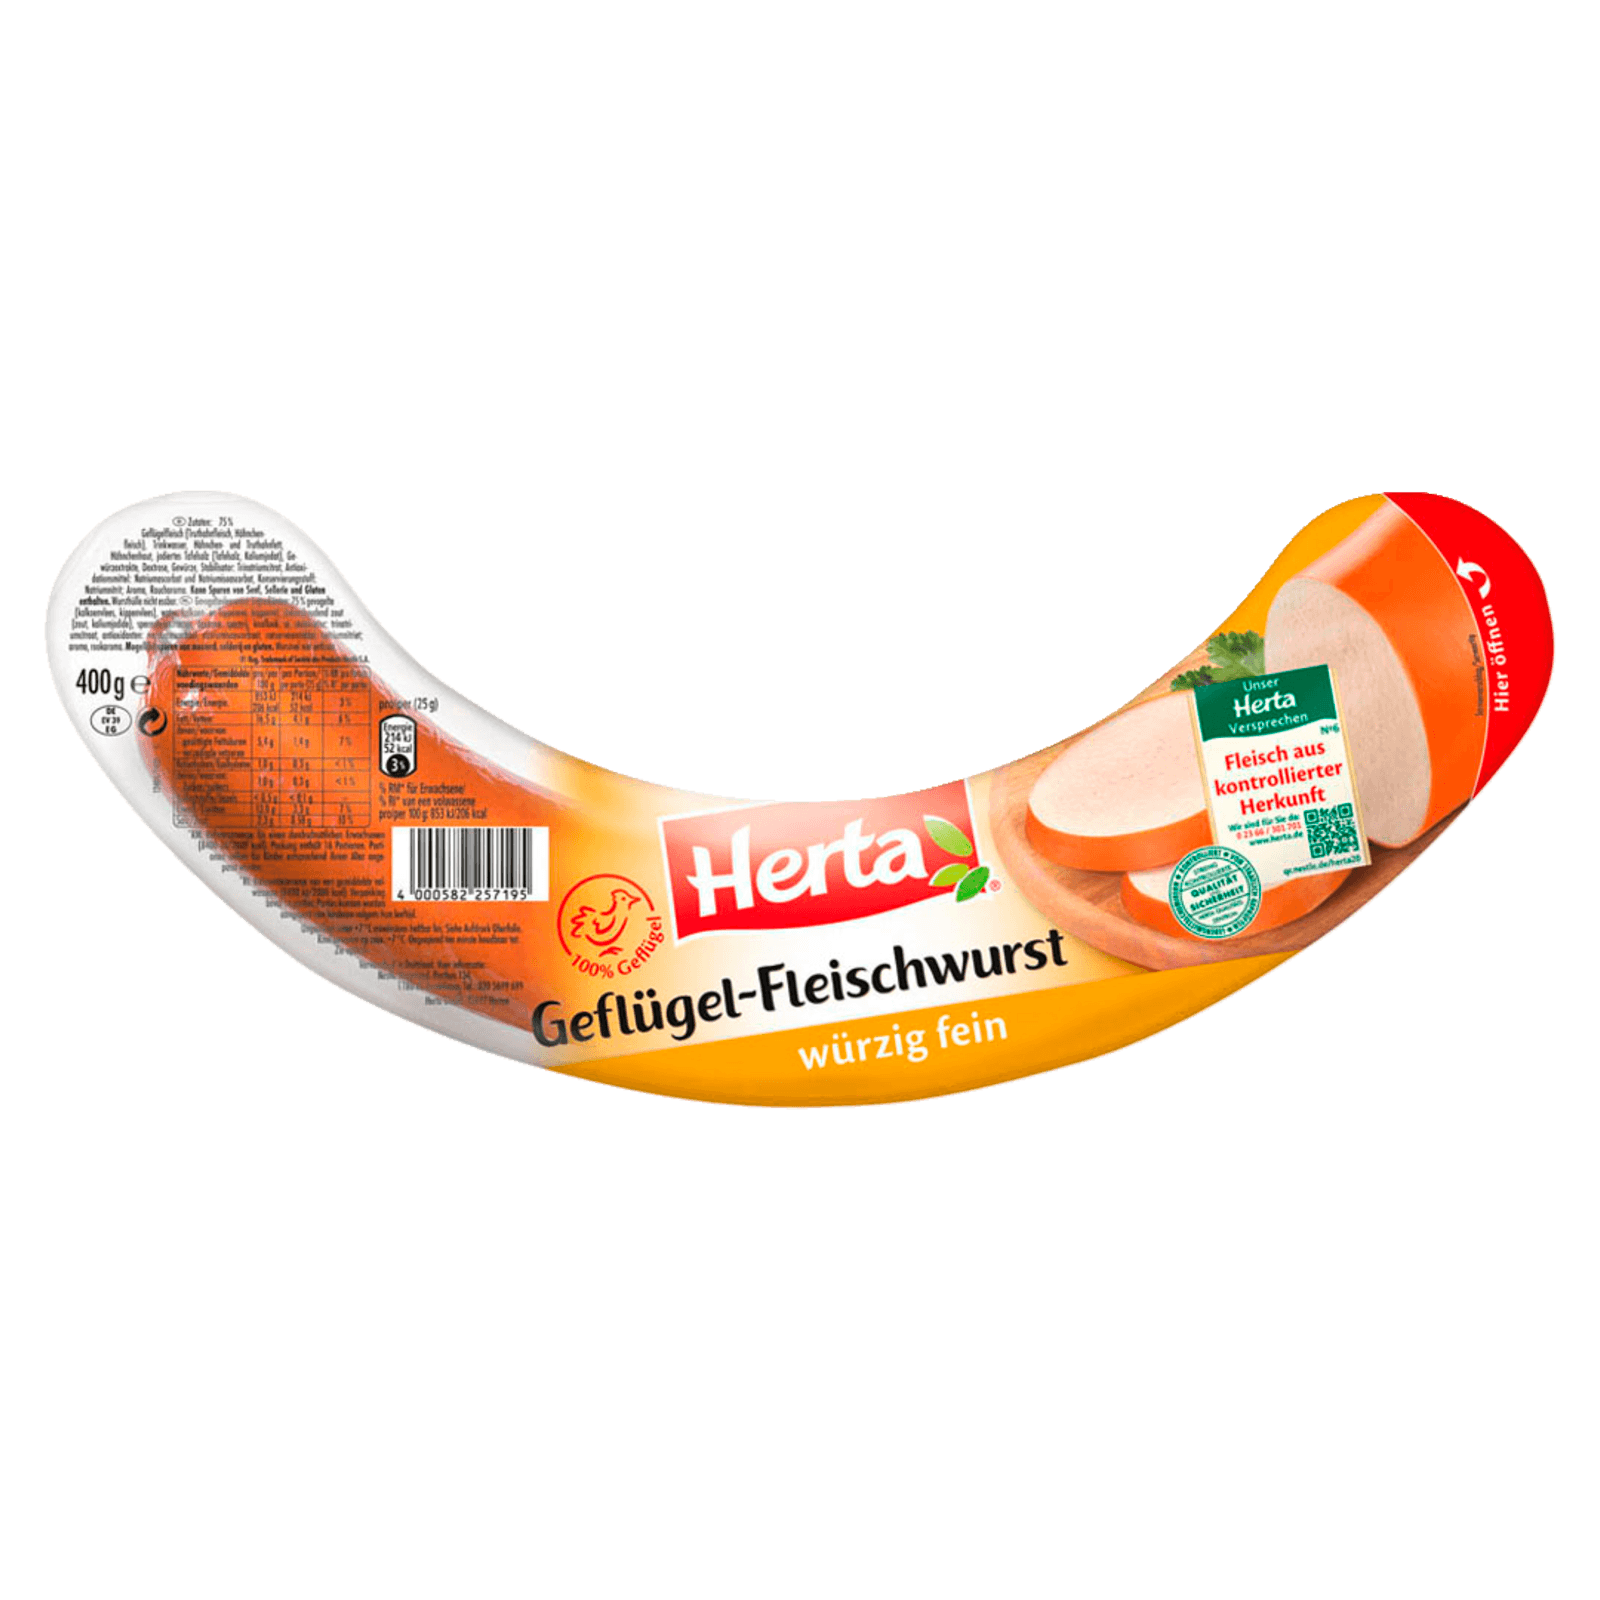 Herta Geflugel Fleischwurst Wurzig Fein 400g Bei Rewe Online Bestellen